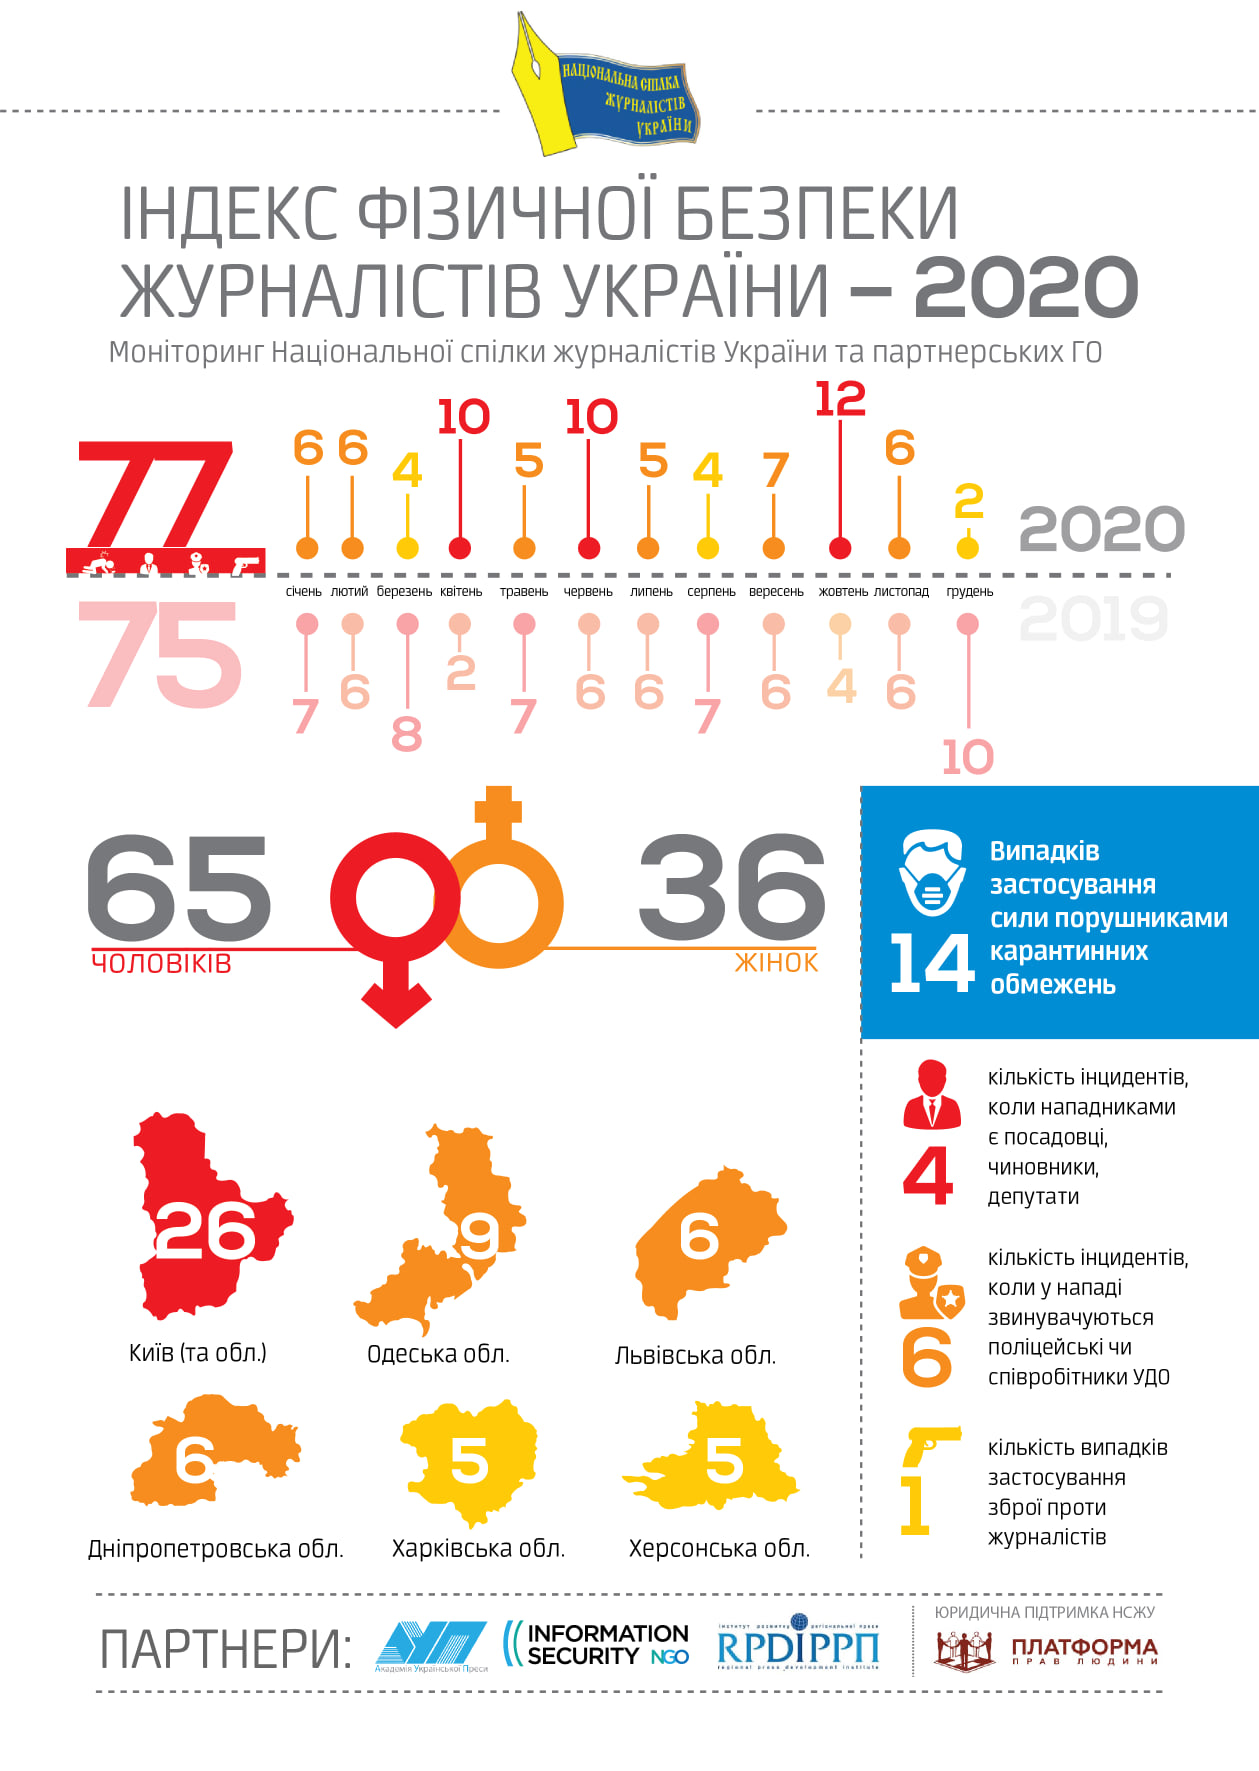 В 2020 году 77 раз нападали на журналистов - НСЖУ. Скриншот: facebook.com/sergiy.tomilenk